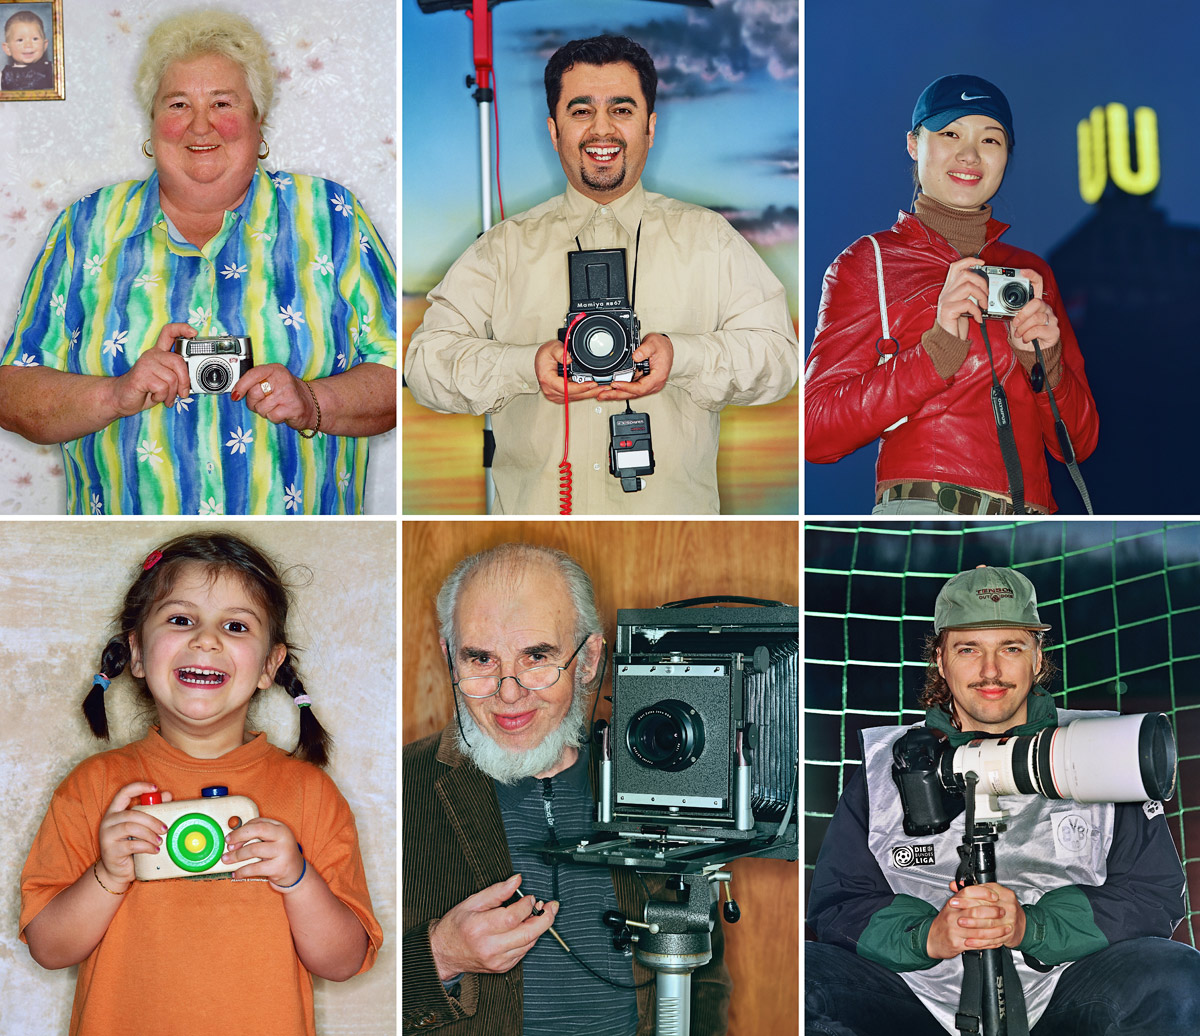 Profi- und Amateurfotografen - Portraitserie für die Werbekampagne eines Fotolabors - Foto © Dietrich Hackenberg